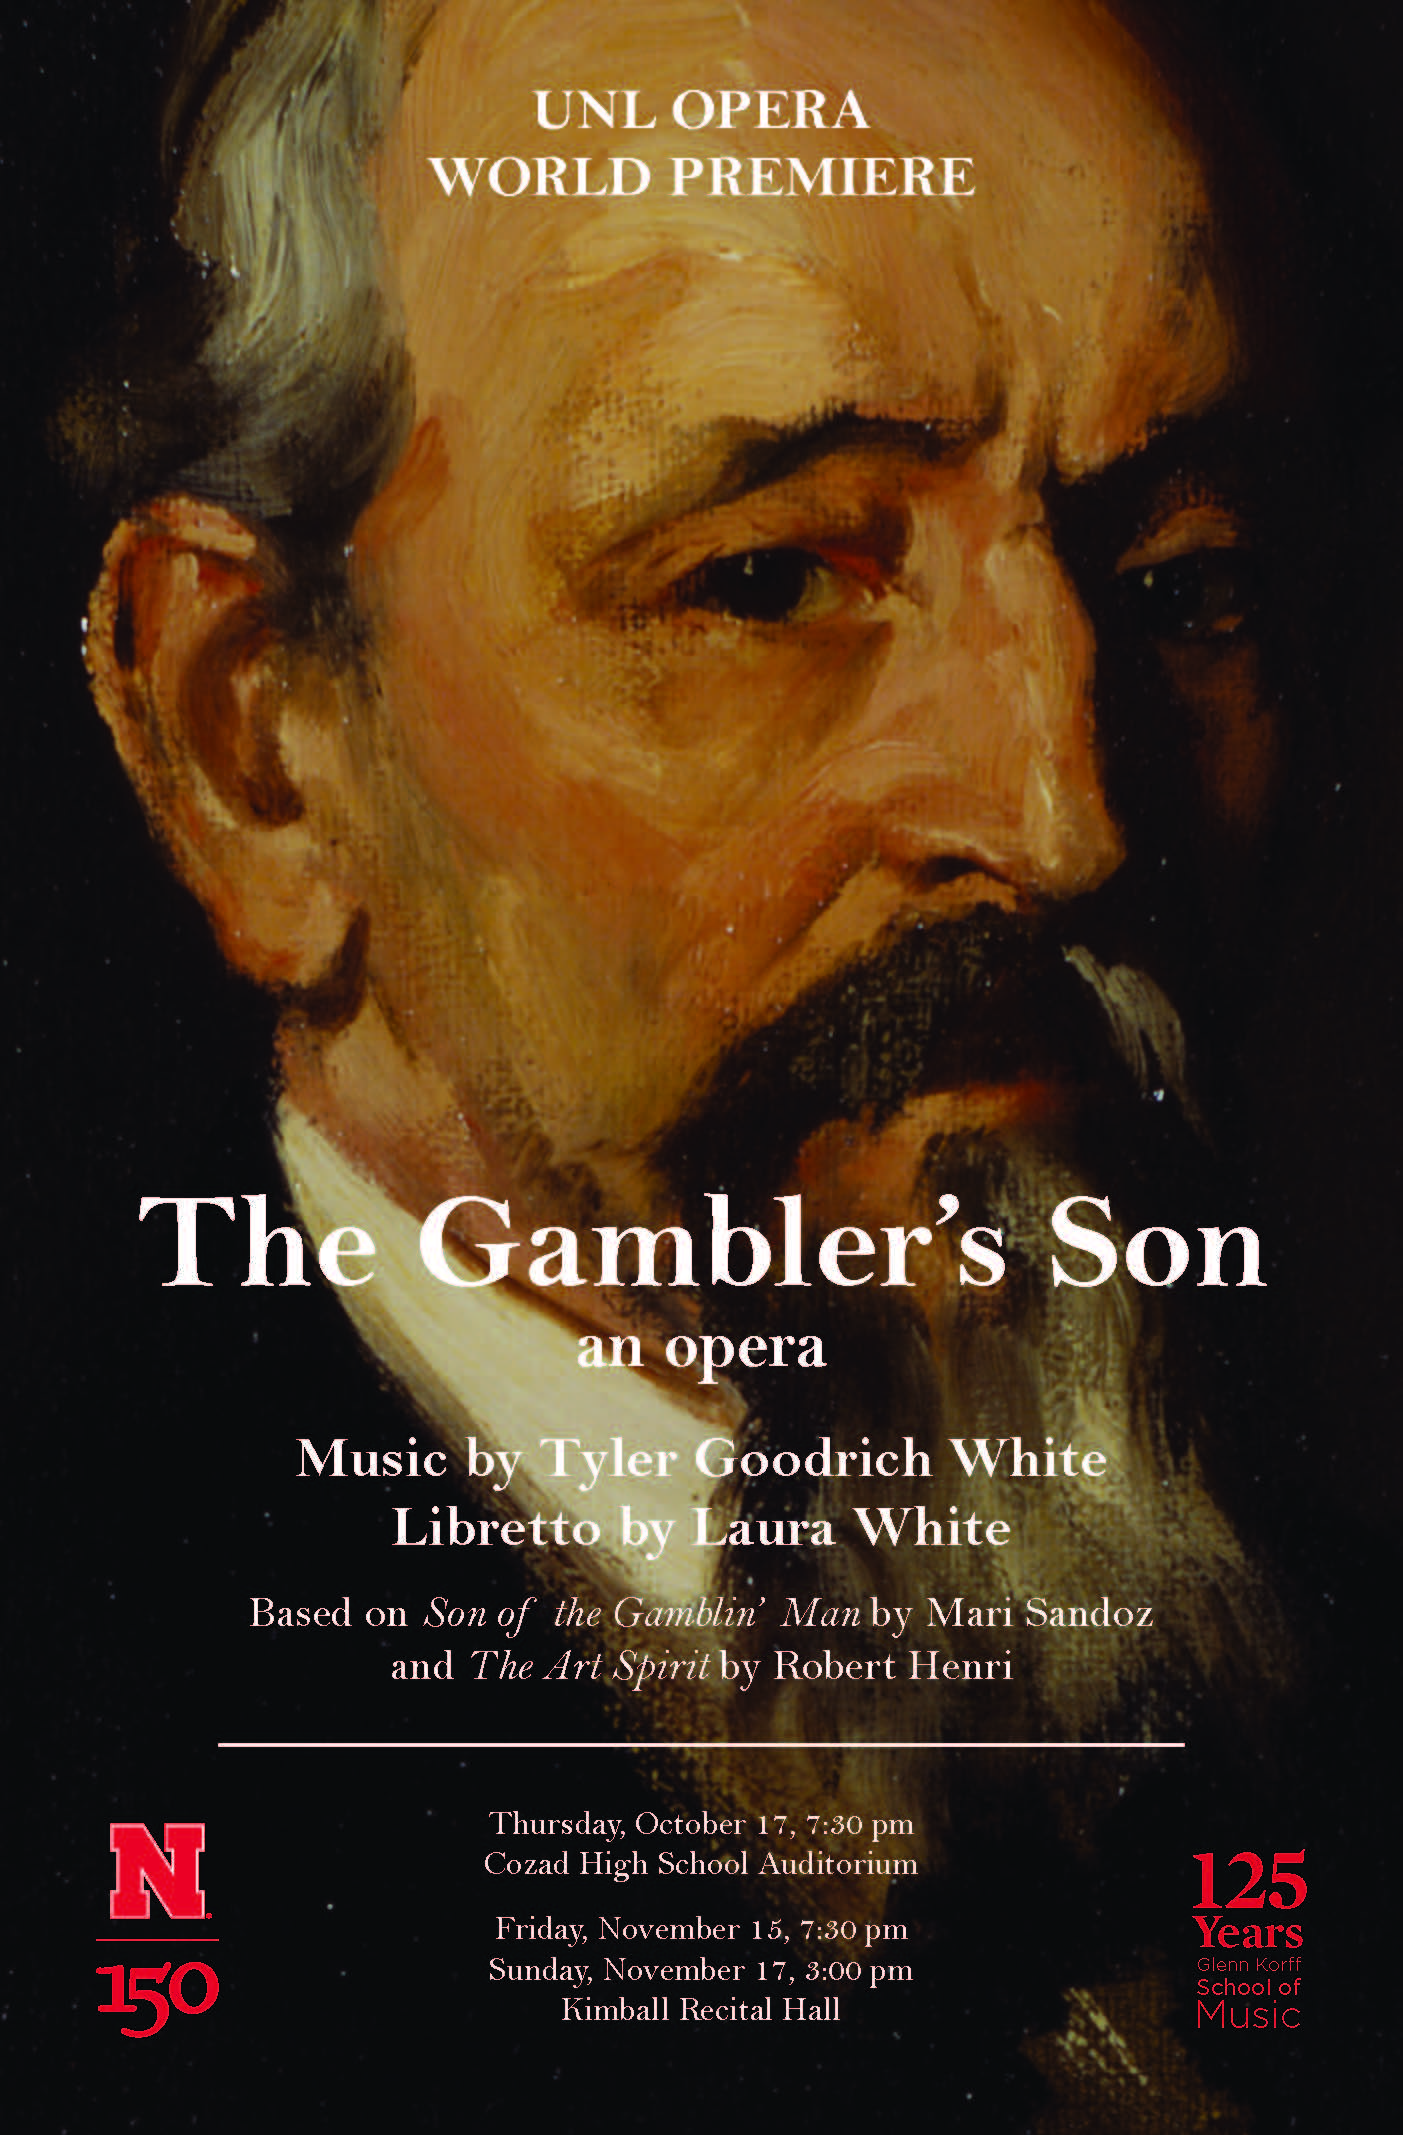 The Gambler's Son